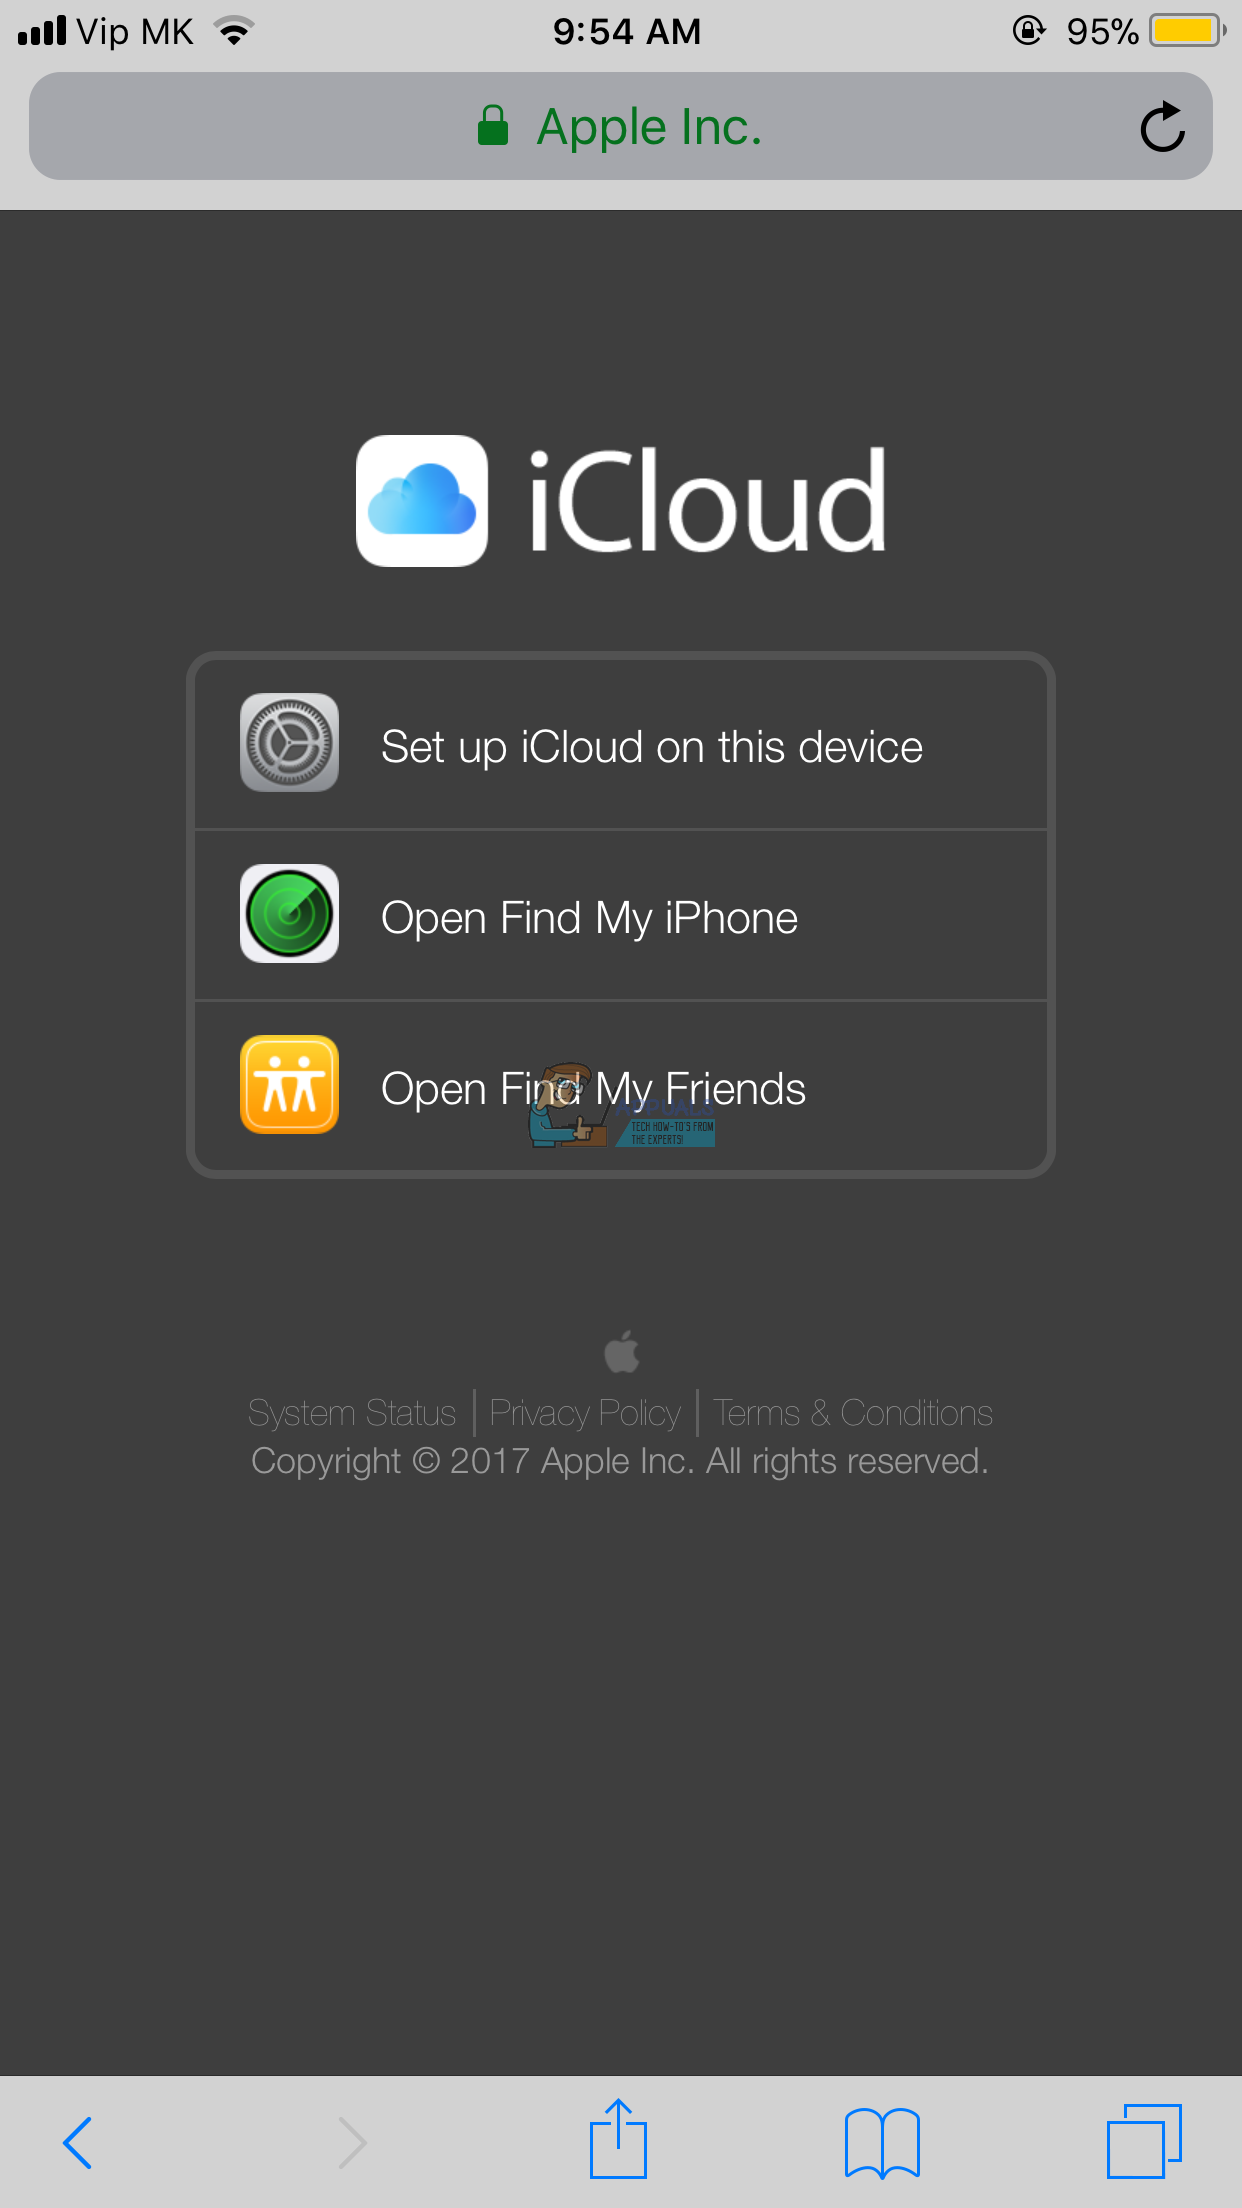 Sådan logger du på iCloud.com ved hjælp af din iPhone eller iPad